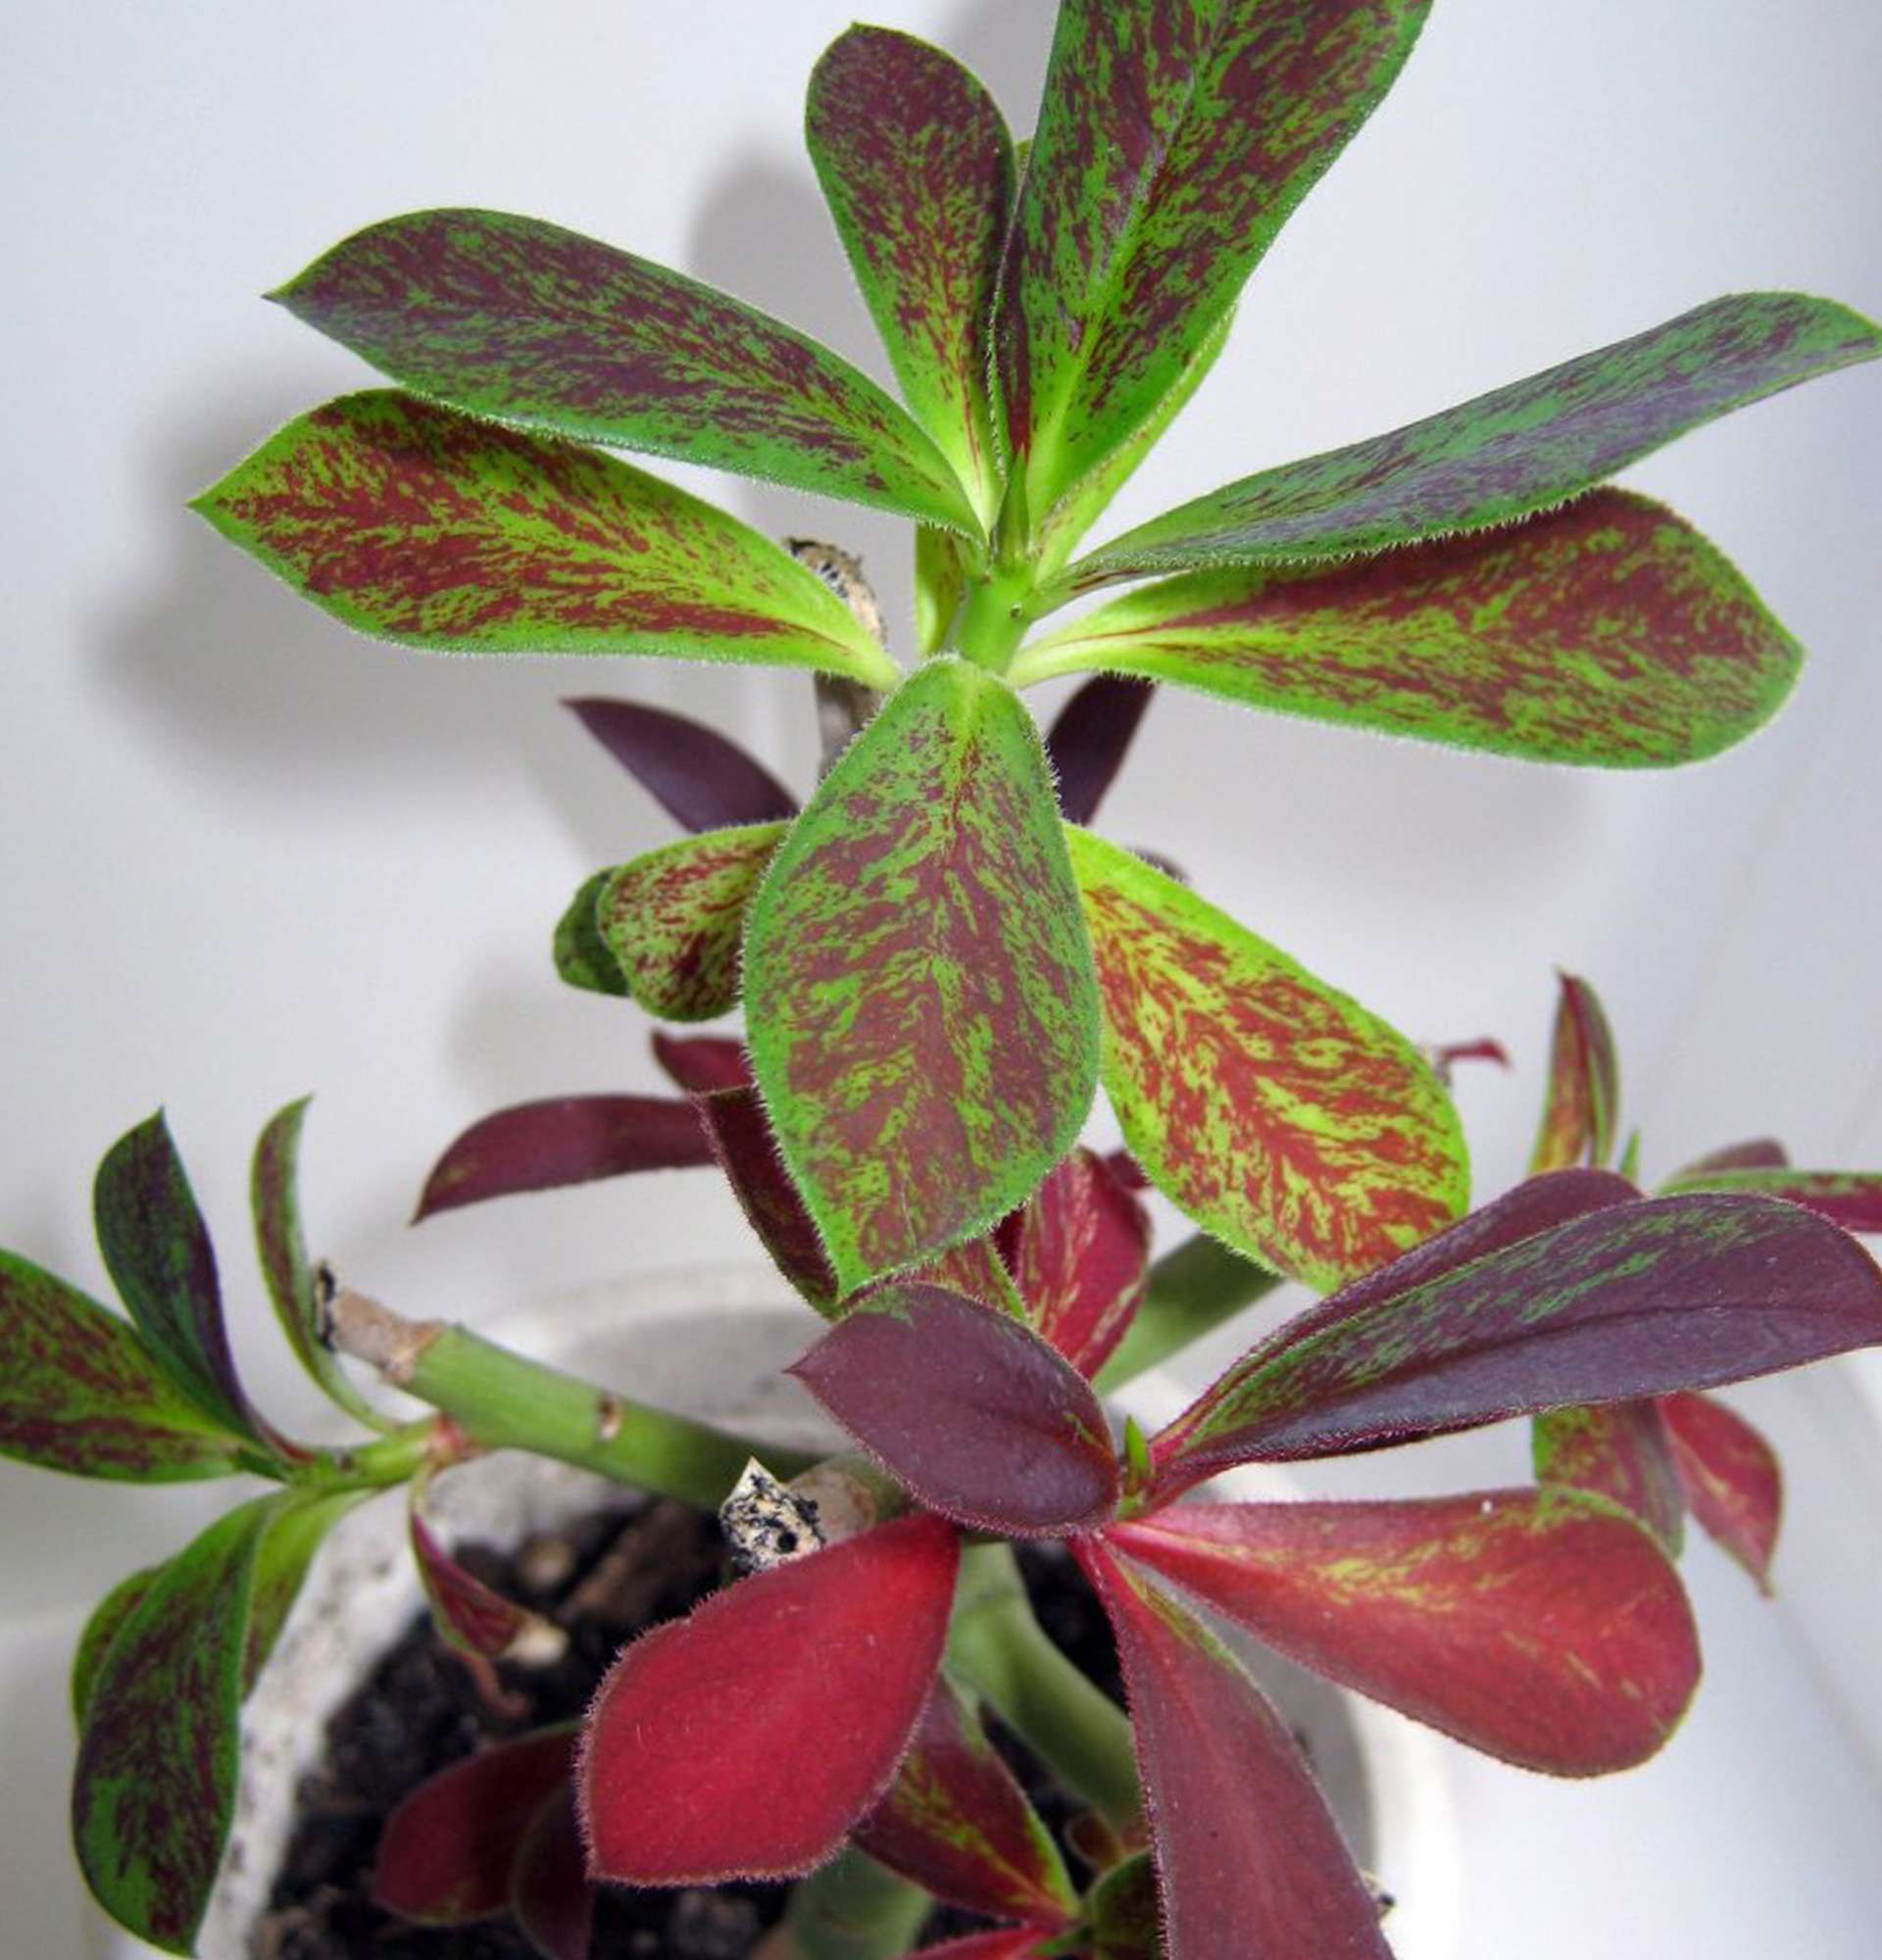  Синадениум фото - растение с зелено-фиолетовыми листьями